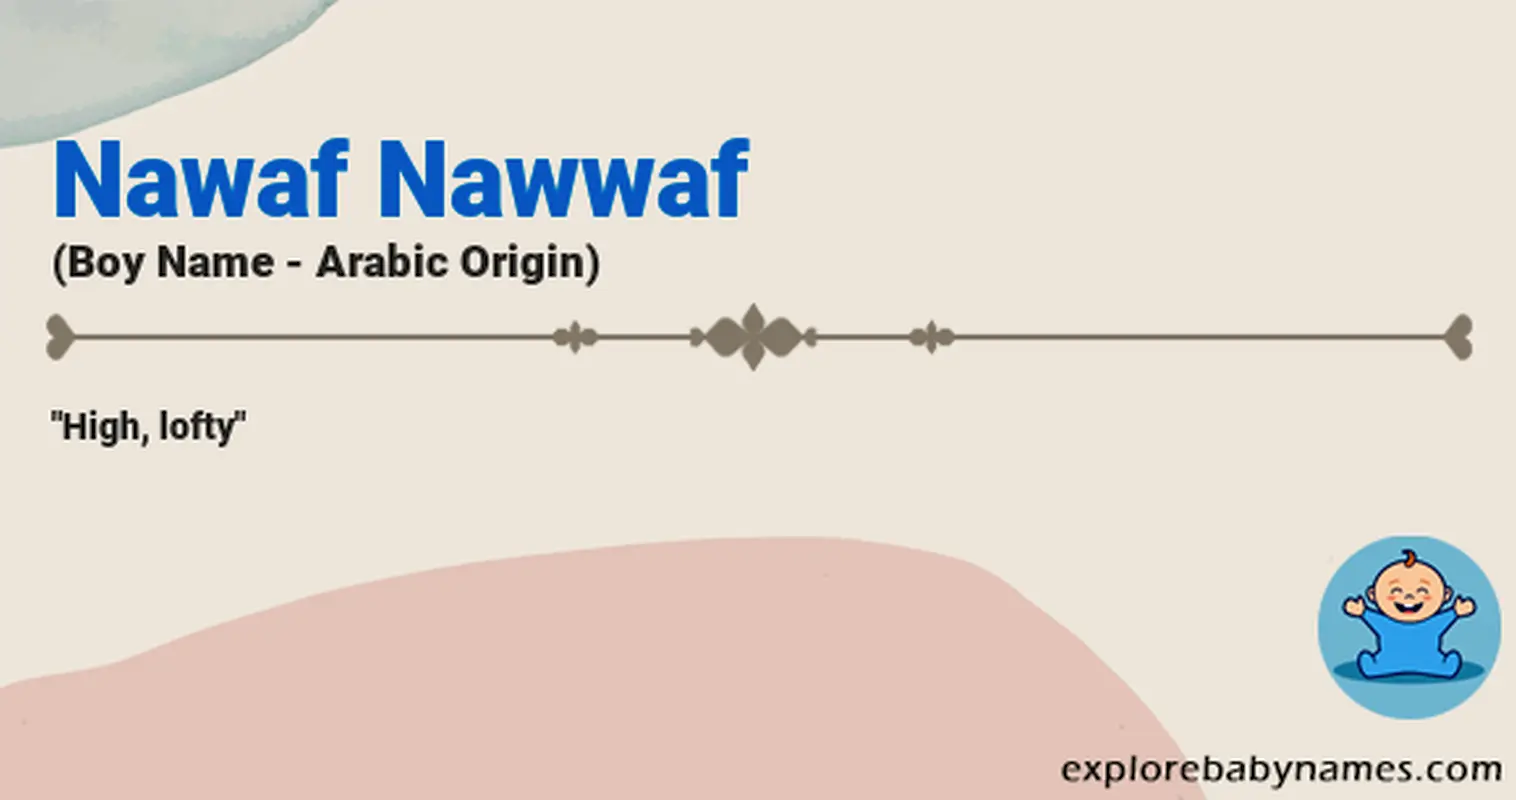 Meaning of Nawaf Nawwaf